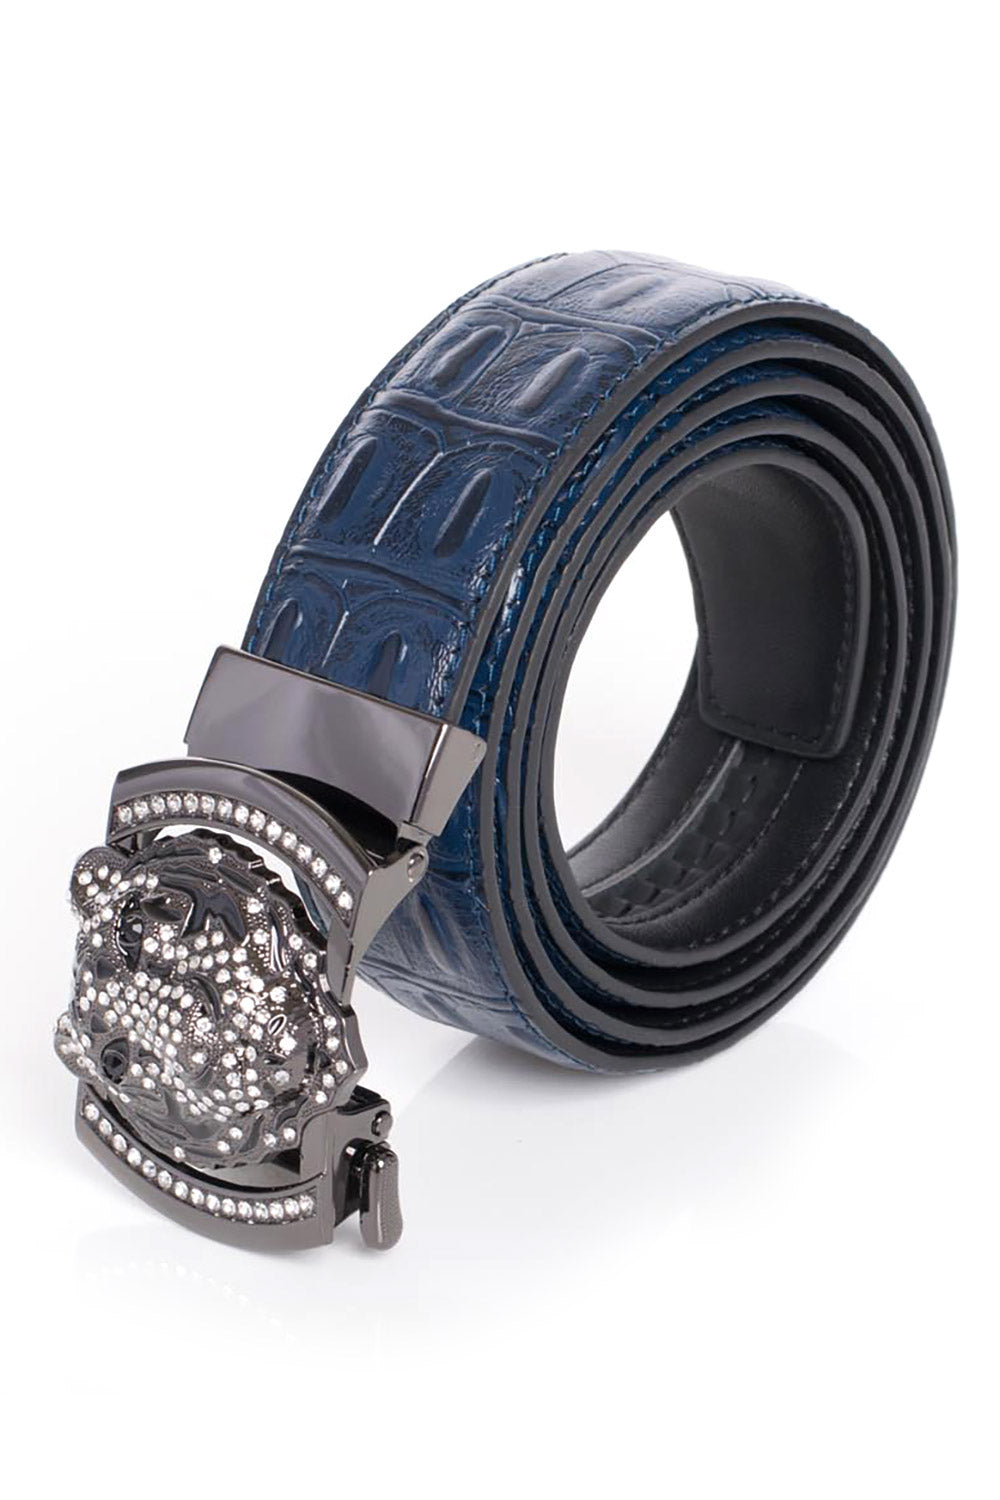 Barabas EYE OF THE TIGER Blue Embossed Crocodile Leather Dress Belt - Dudes Boutique